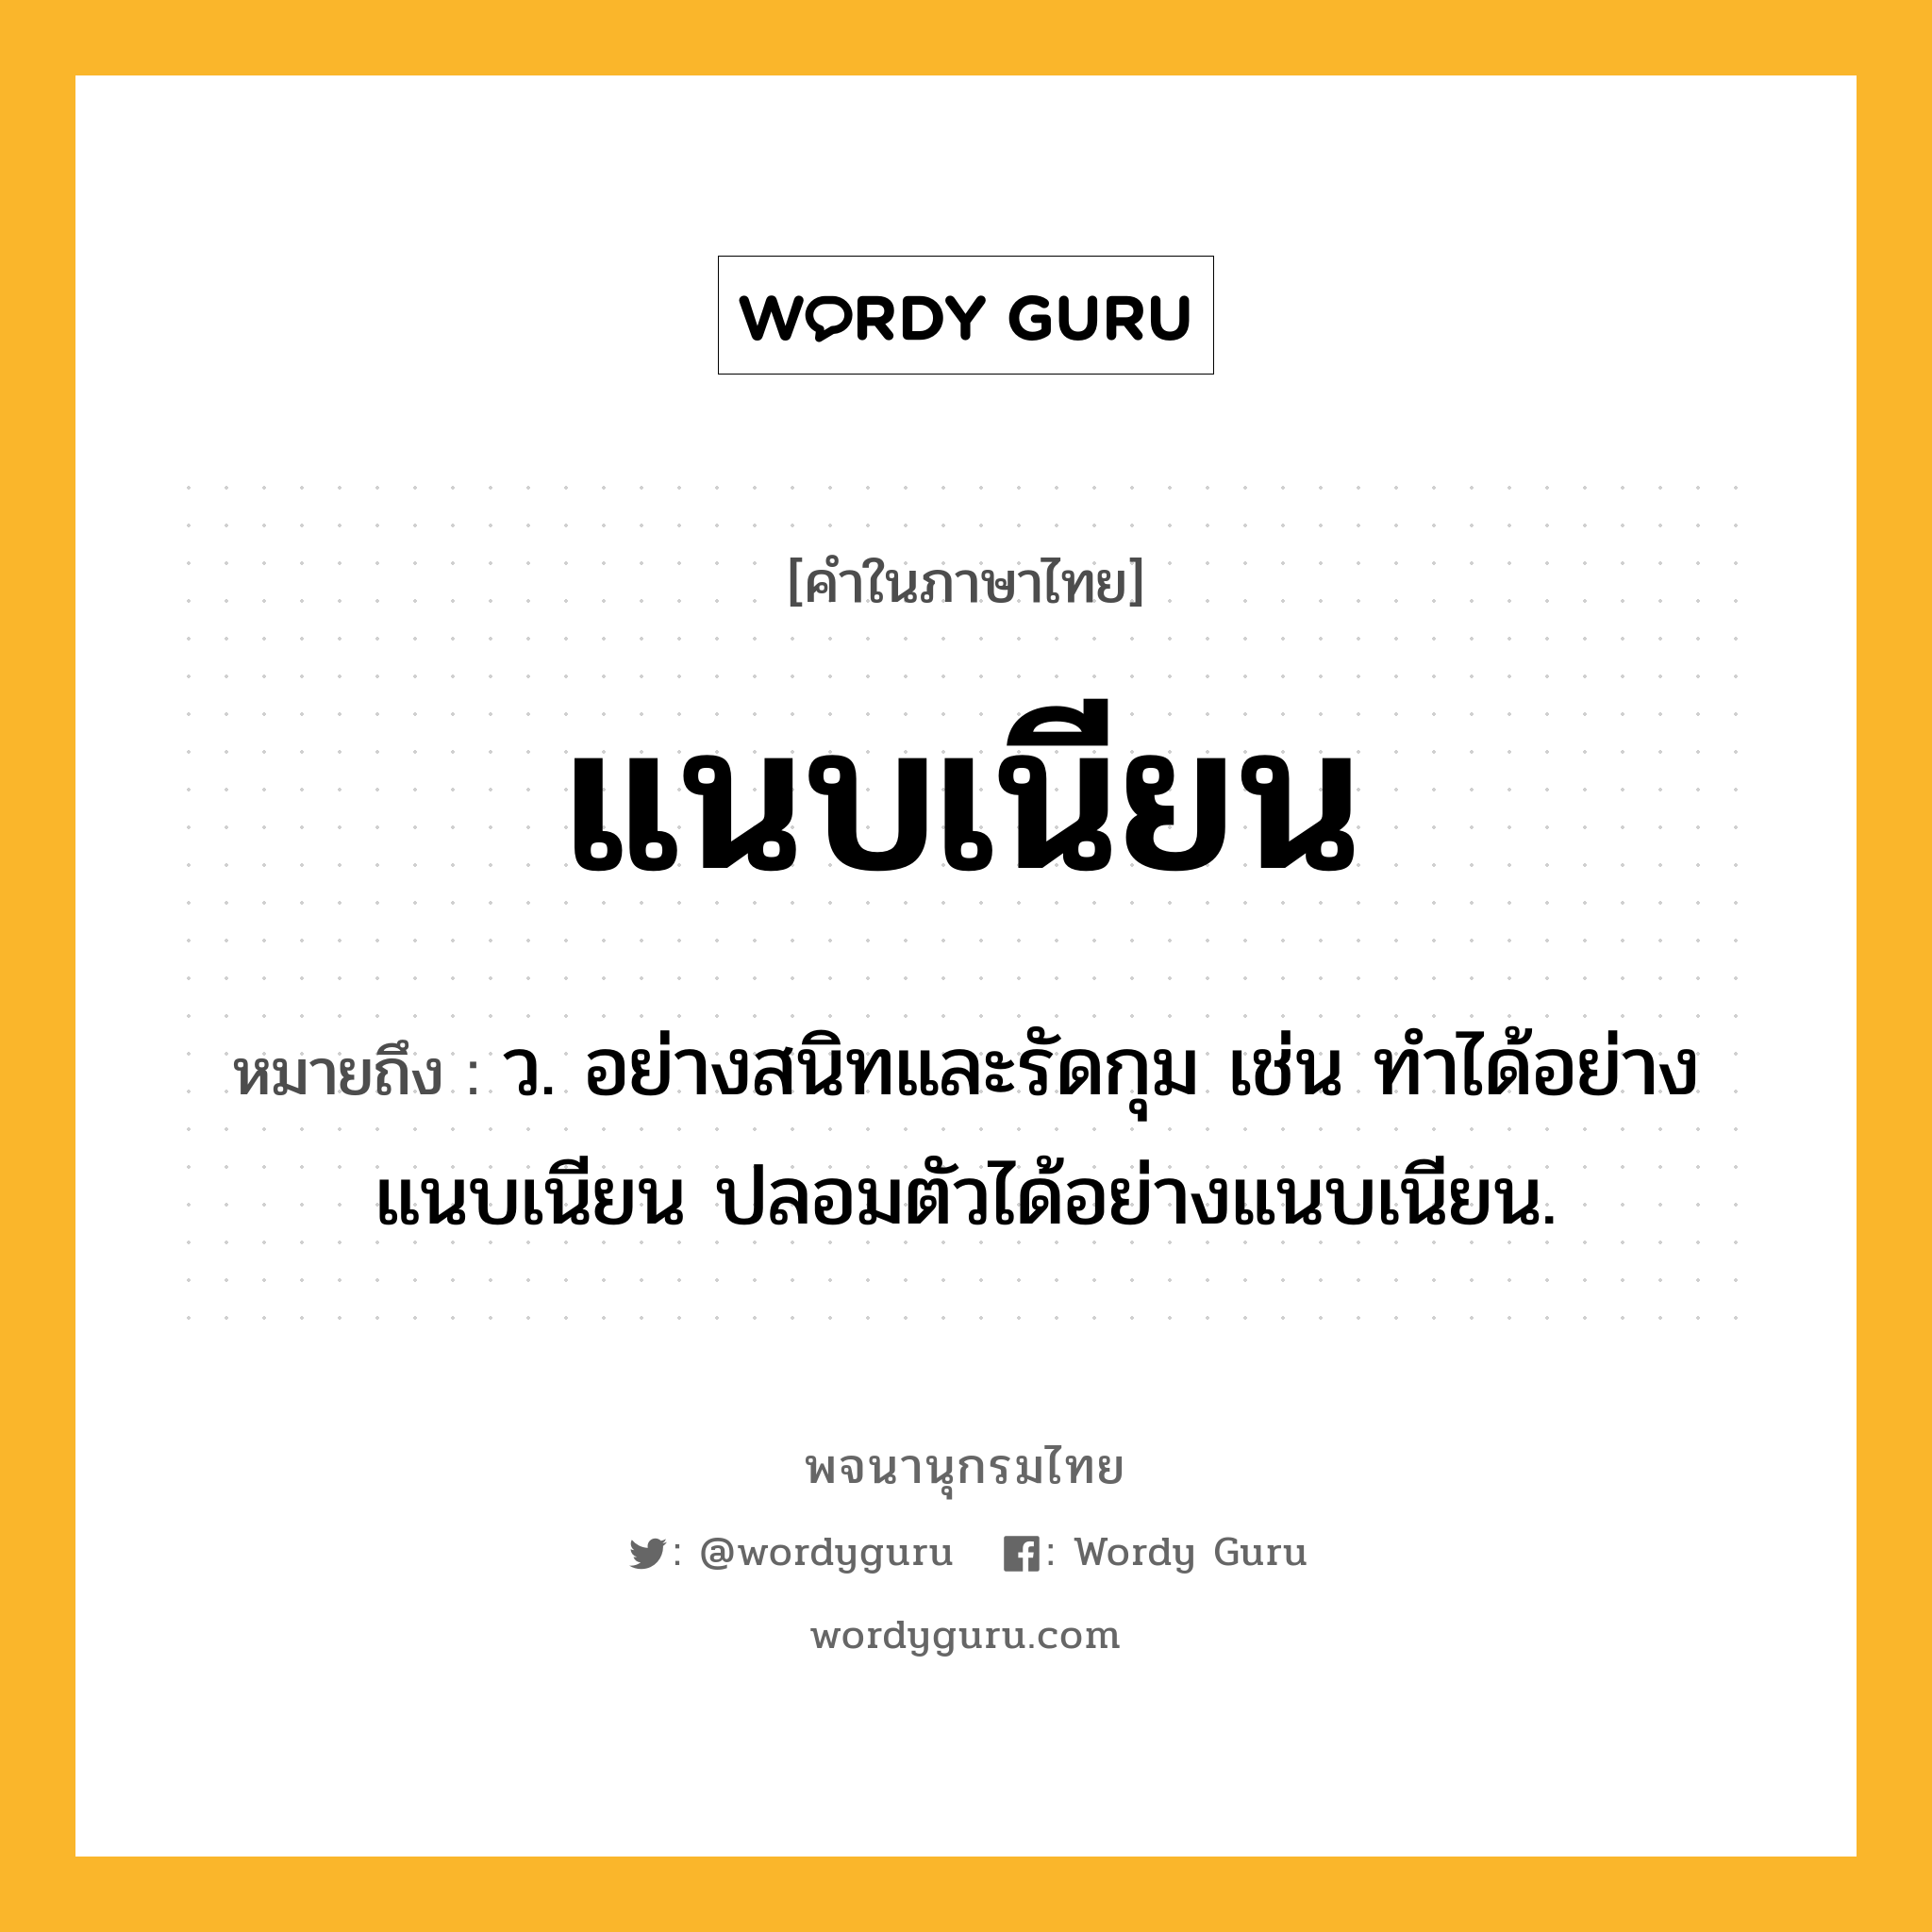 แนบเนียน หมายถึงอะไร?, คำในภาษาไทย แนบเนียน หมายถึง ว. อย่างสนิทและรัดกุม เช่น ทําได้อย่างแนบเนียน ปลอมตัวได้อย่างแนบเนียน.